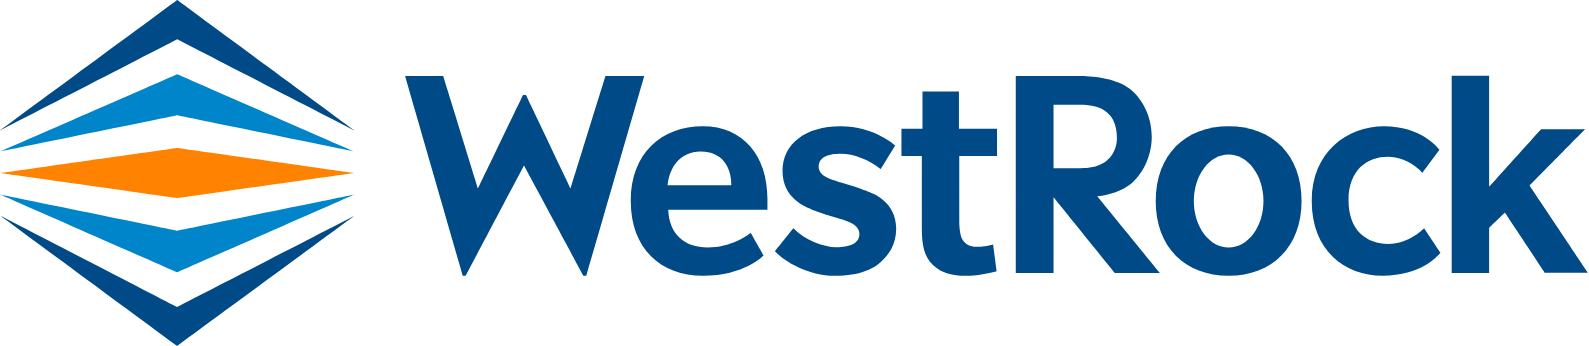 Westrock logo large (transparent PNG)